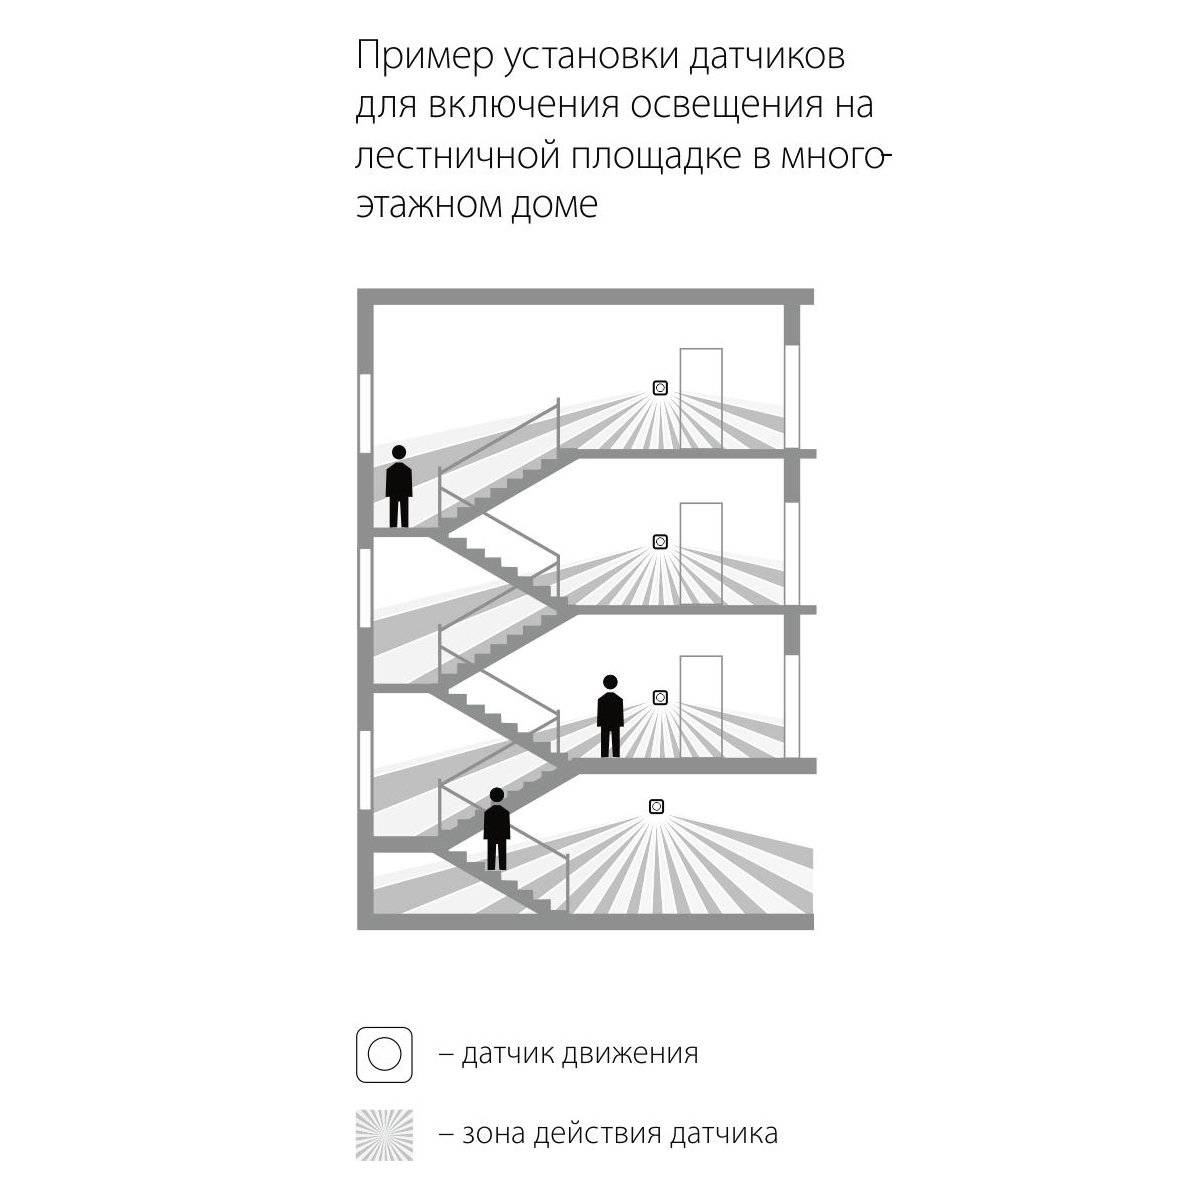 Датчики движения для включения света на лестнице — обзор вариантов и характеристик